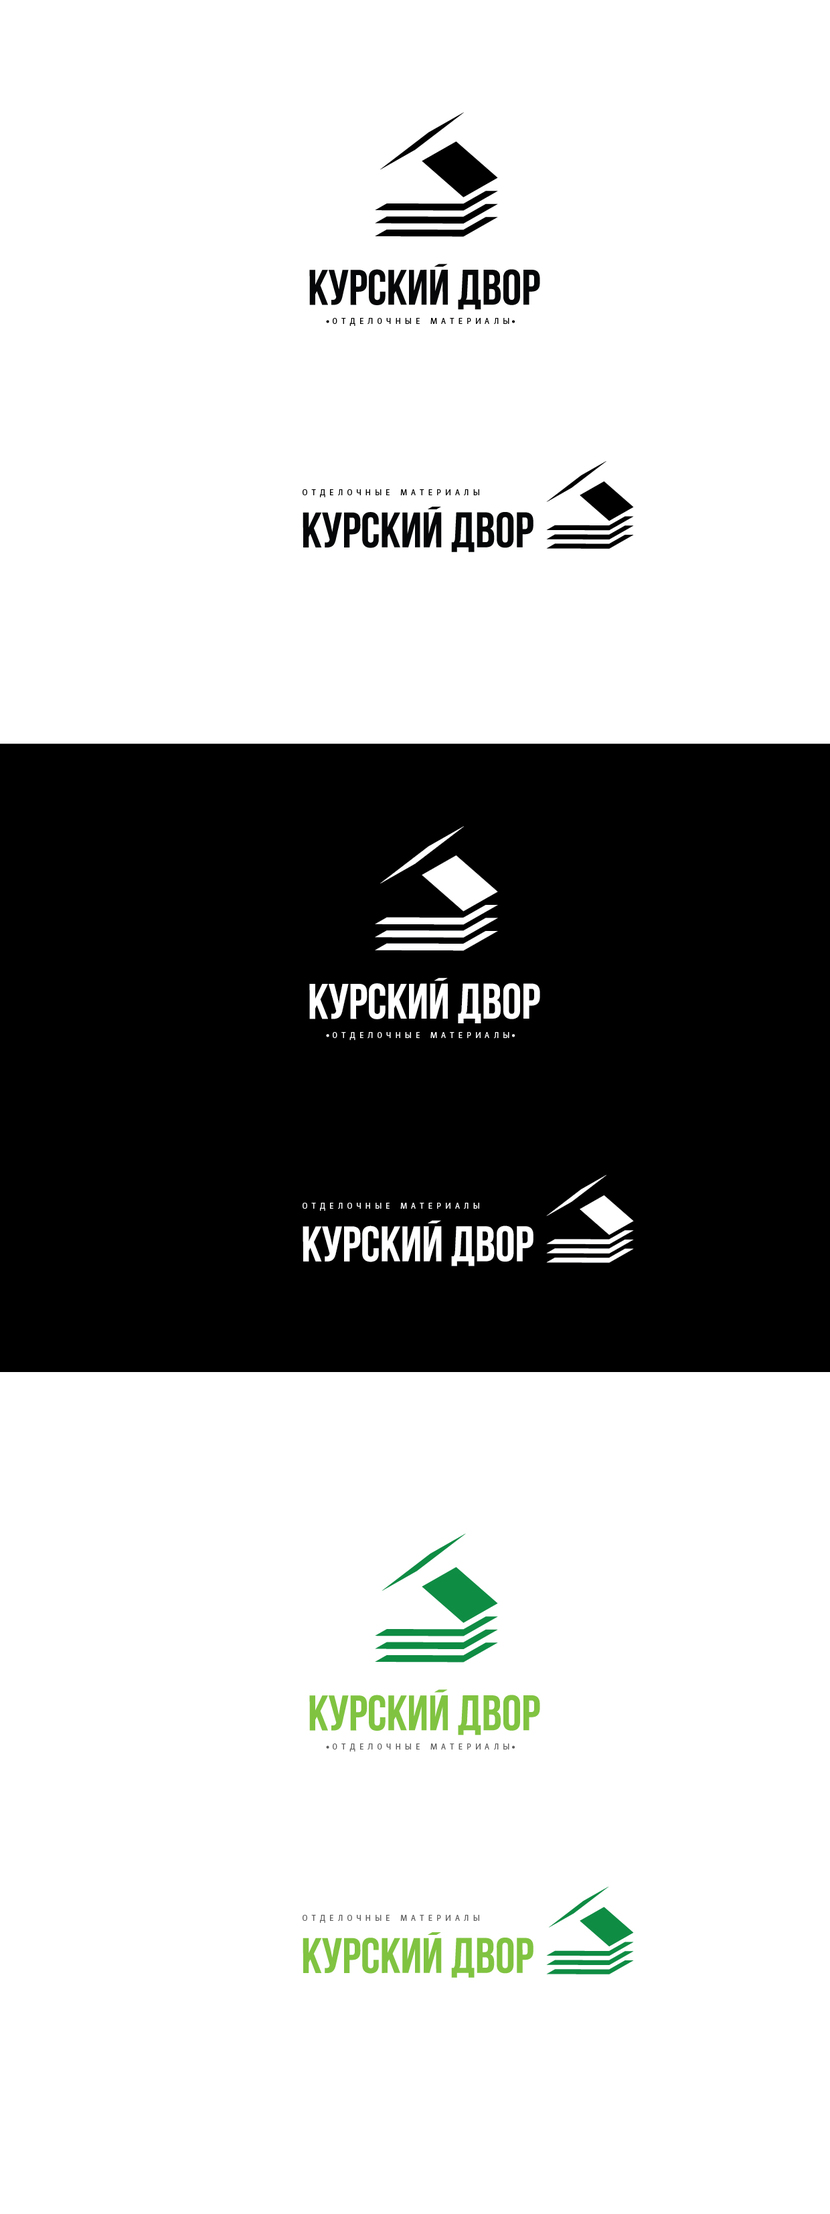 КУРСКИЙ ДВОР_2 - Логотип компании занимающейся отделочными материалами (Курский Двор)